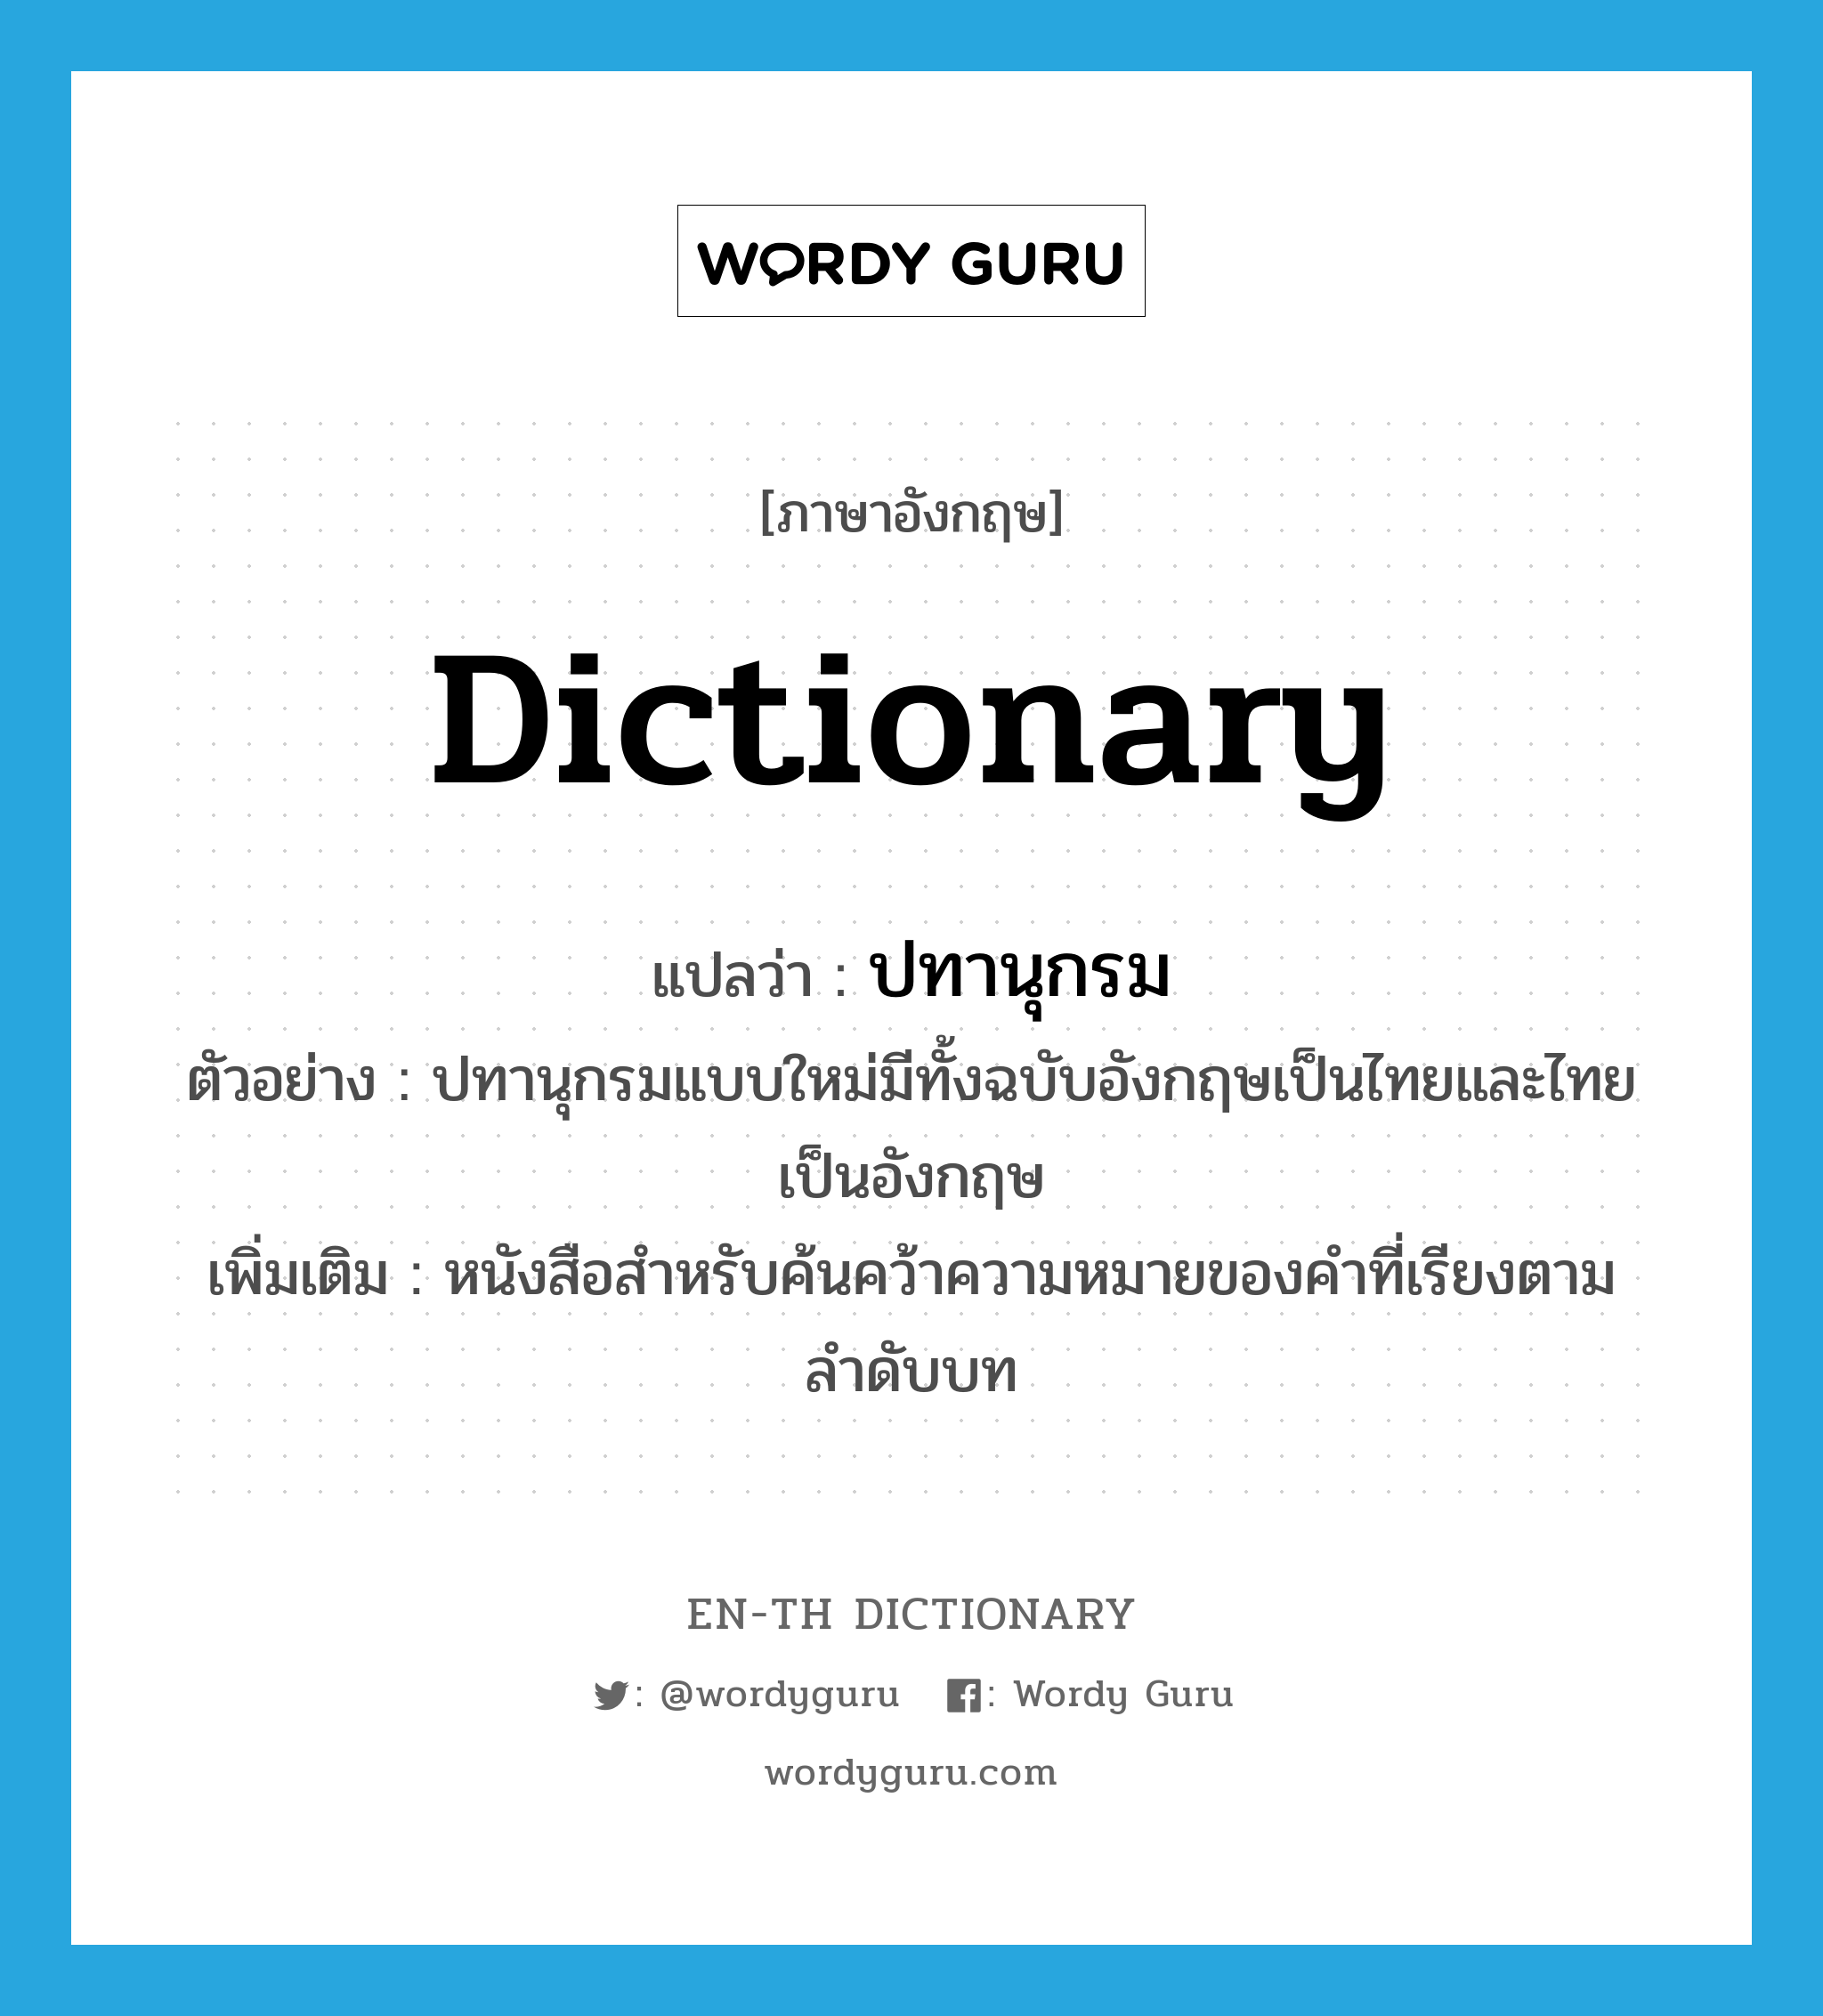 dictionary แปลว่า?, คำศัพท์ภาษาอังกฤษ dictionary แปลว่า ปทานุกรม ประเภท N ตัวอย่าง ปทานุกรมแบบใหม่มีทั้งฉบับอังกฤษเป็นไทยและไทยเป็นอังกฤษ เพิ่มเติม หนังสือสำหรับค้นคว้าความหมายของคำที่เรียงตามลำดับบท หมวด N